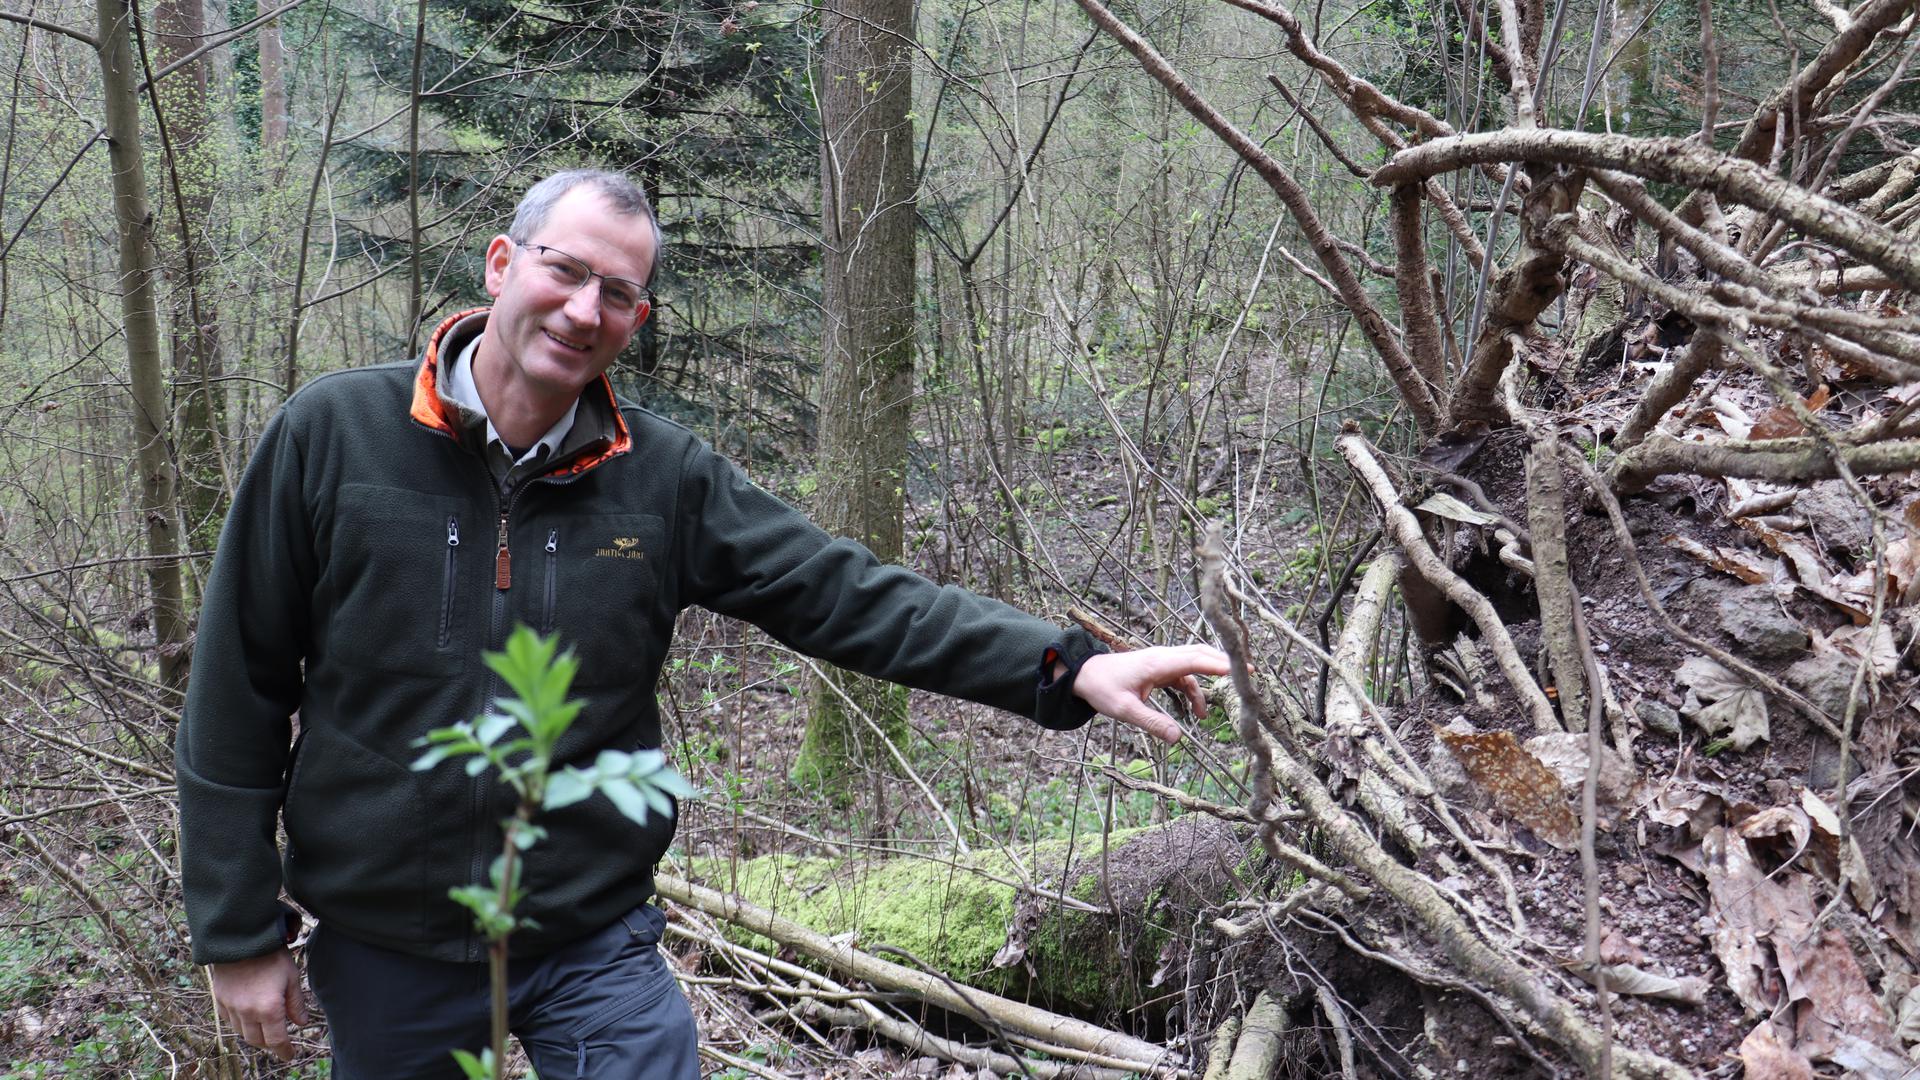 Baden-Badens Forstamtsleiter Thomas Hauck lässt auch umgestürzte Bäume teils im Wald liegen, denn sie sind wichtige Wasserspeicher.